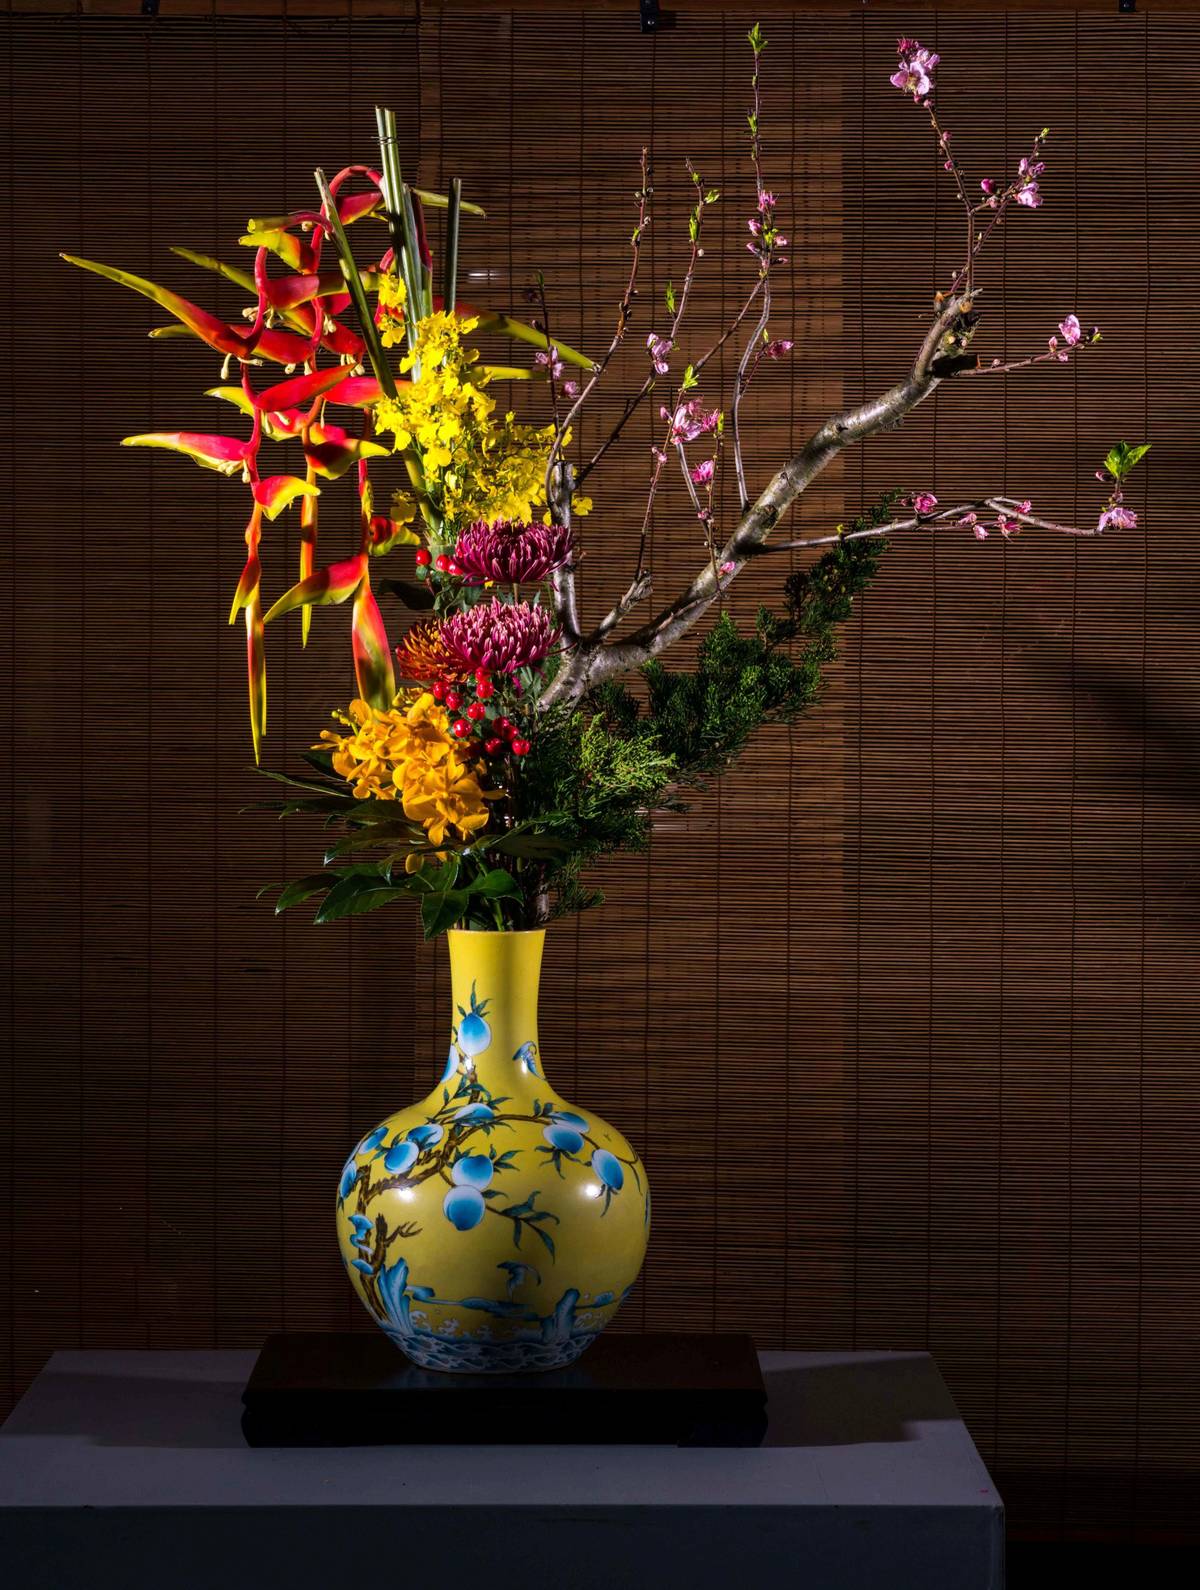 特展期間將展示中華花藝的六大花器與四大類型的花藝作品